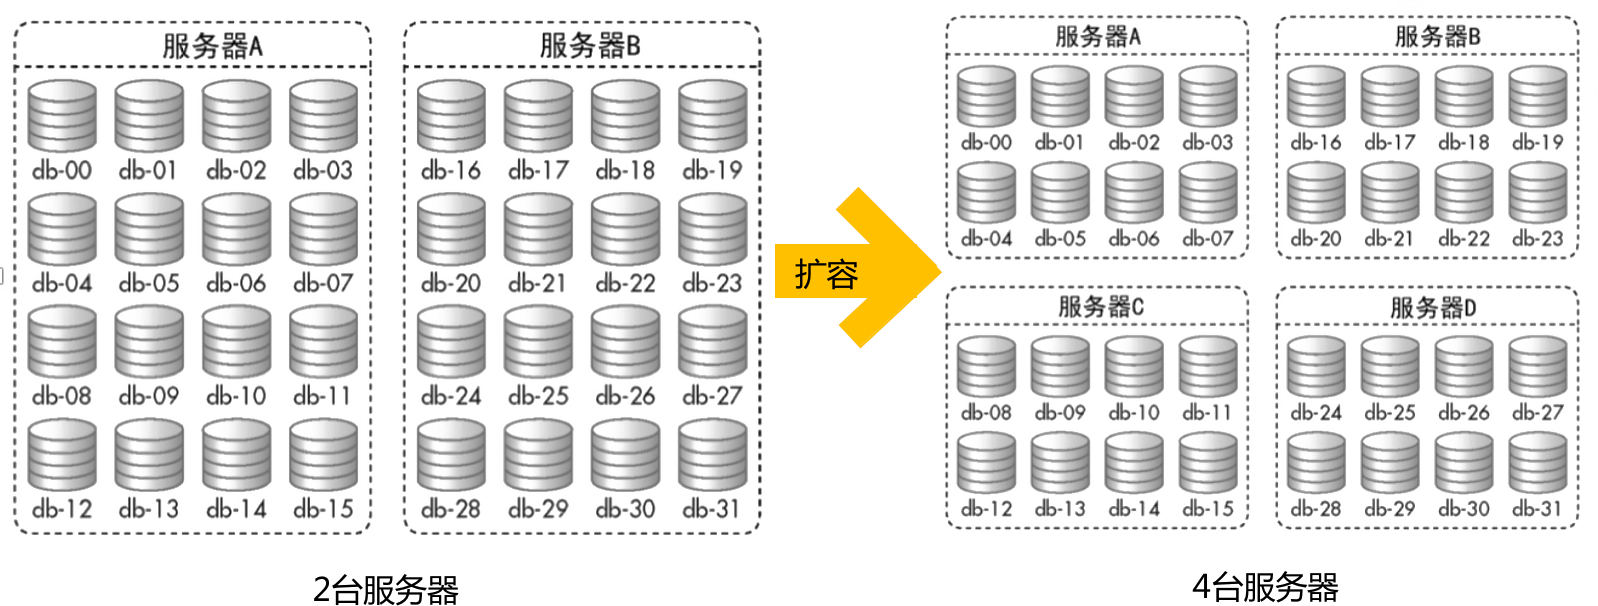 架构设计技术之分布式数据存储_架构_11